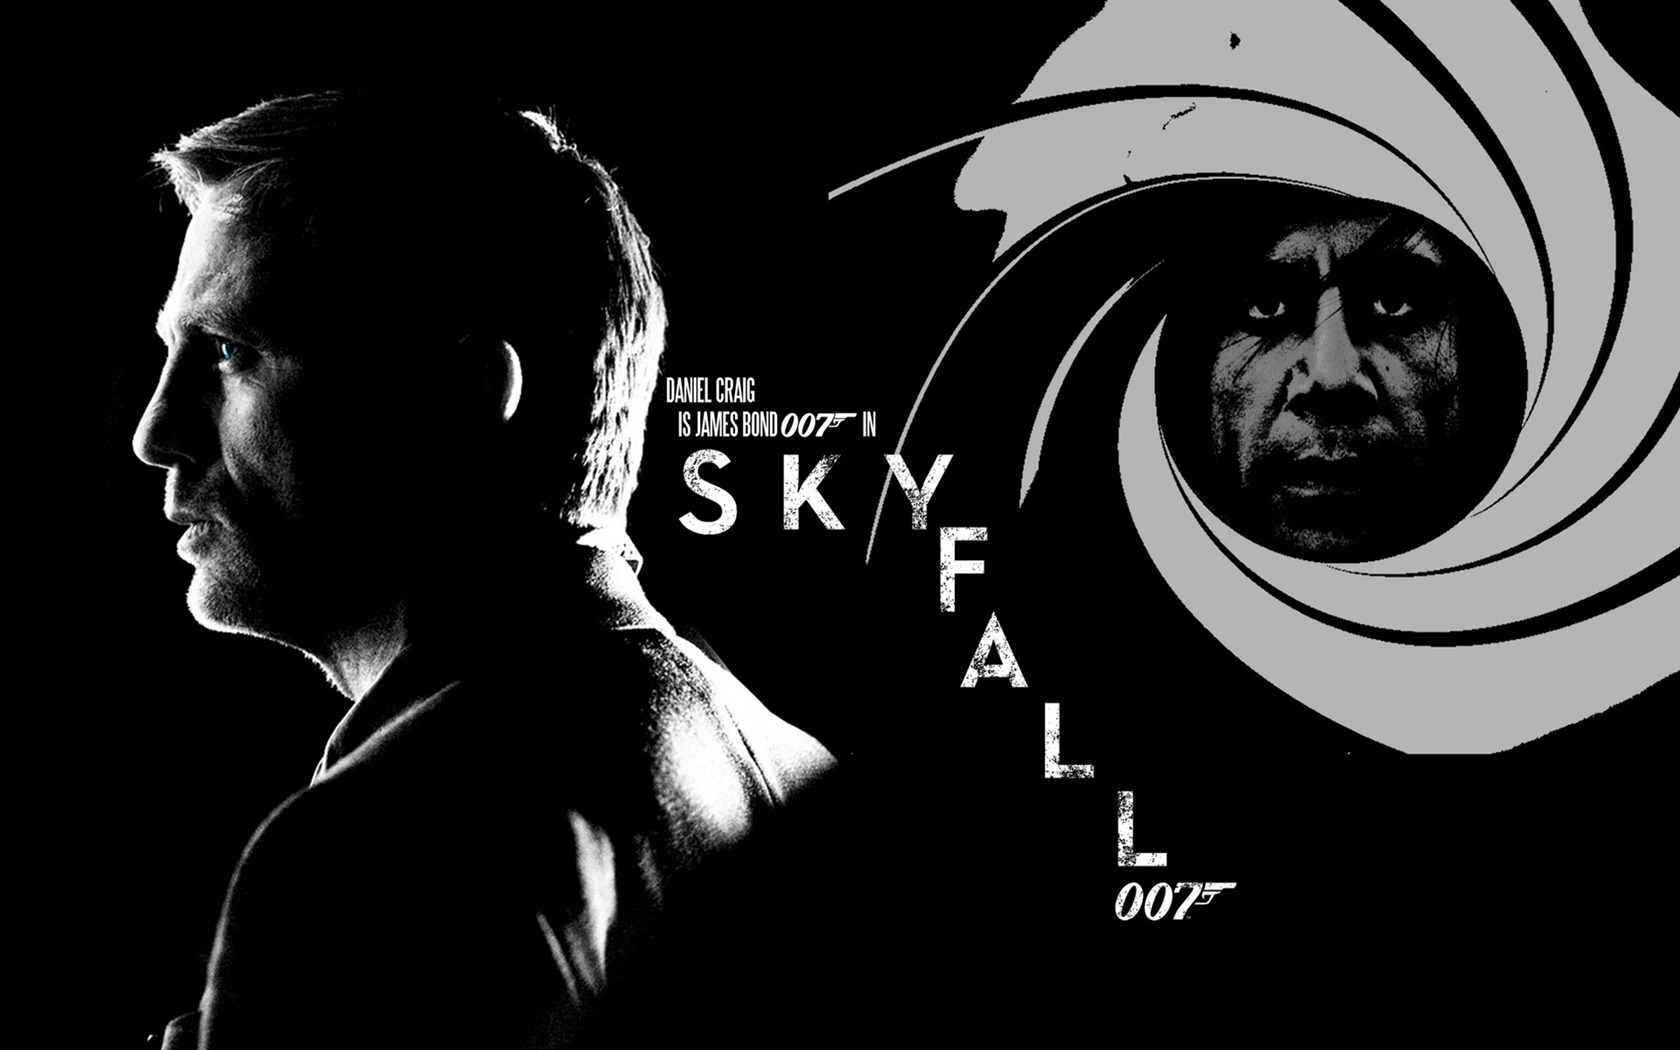 Skyfall 007のhdの壁紙 16 1680x1050 壁紙ダウンロード Skyfall 007のhdの壁紙 映画 壁紙 V3の 壁紙